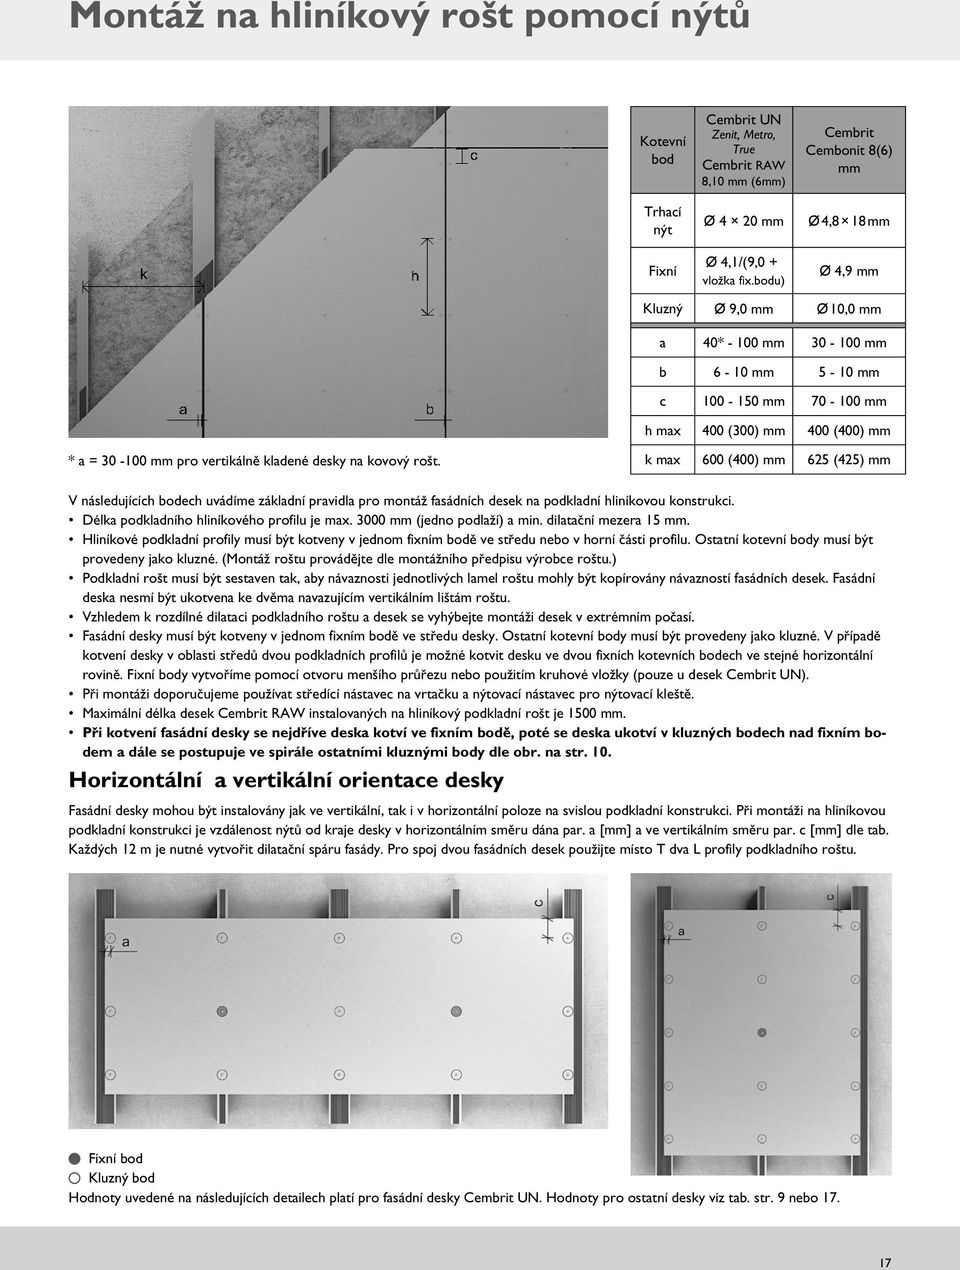 vertikálně kladené desky na kovový rošt. k max 600 (400) mm 625 (425) mm V následujících bodech uvádíme základní pravidla pro montáž fasádních desek na podkladní hliníkovou konstrukci.